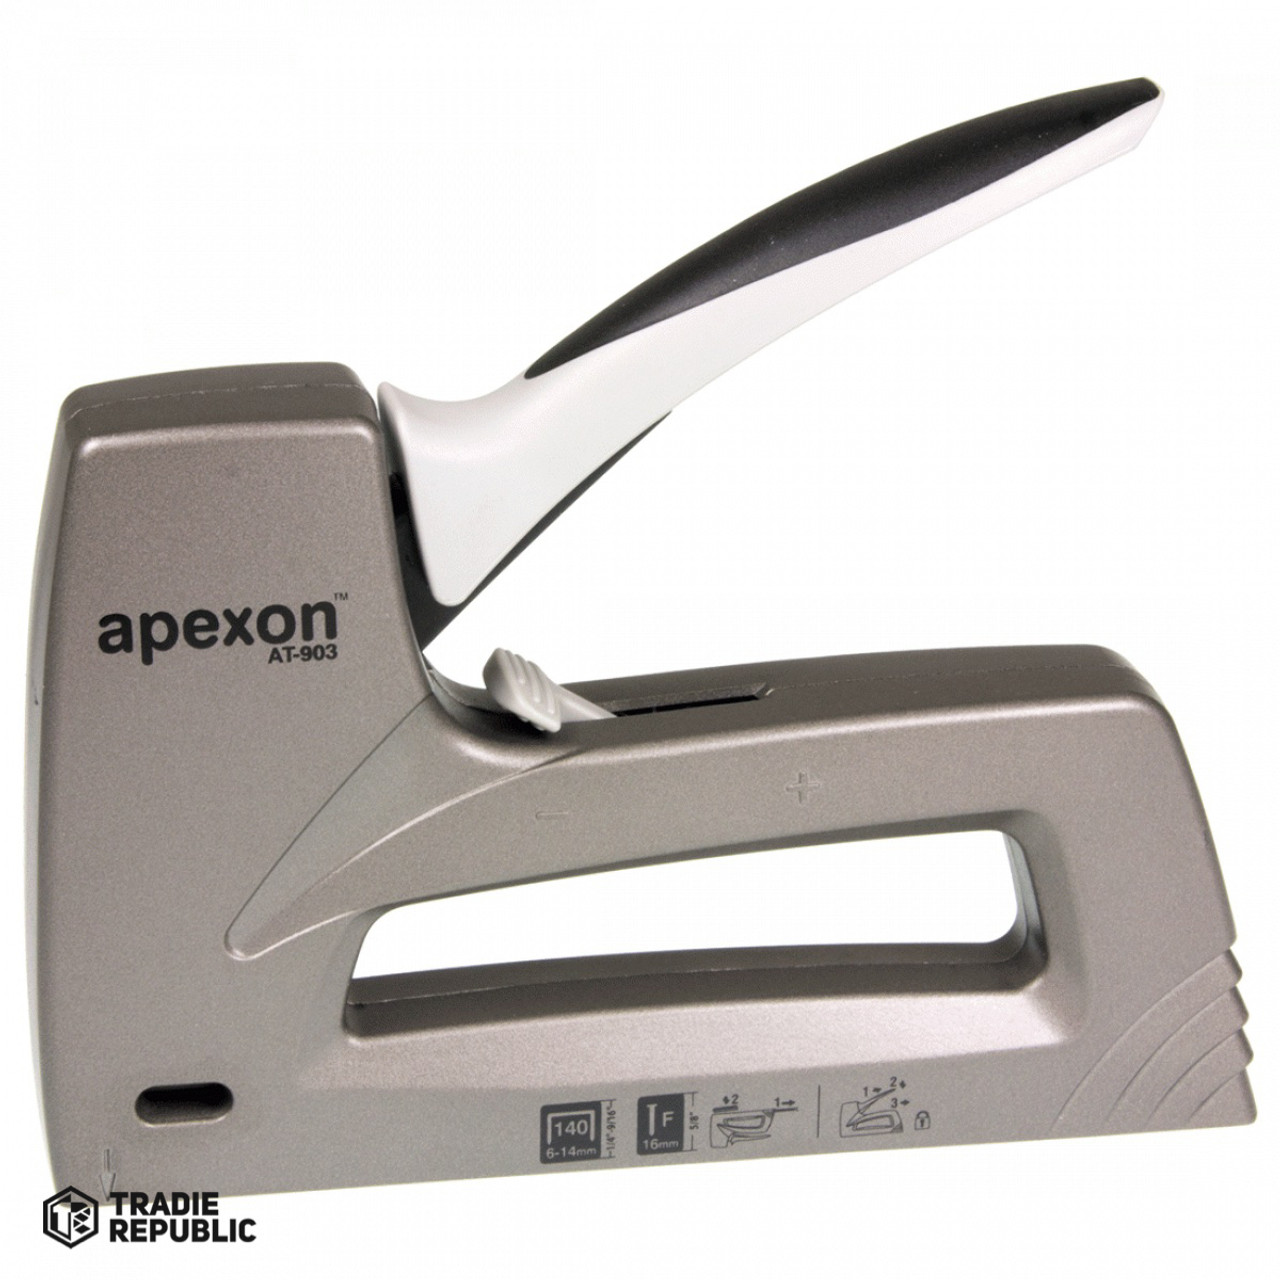 AP903 Apexon Heavy Duty Hand Tacker